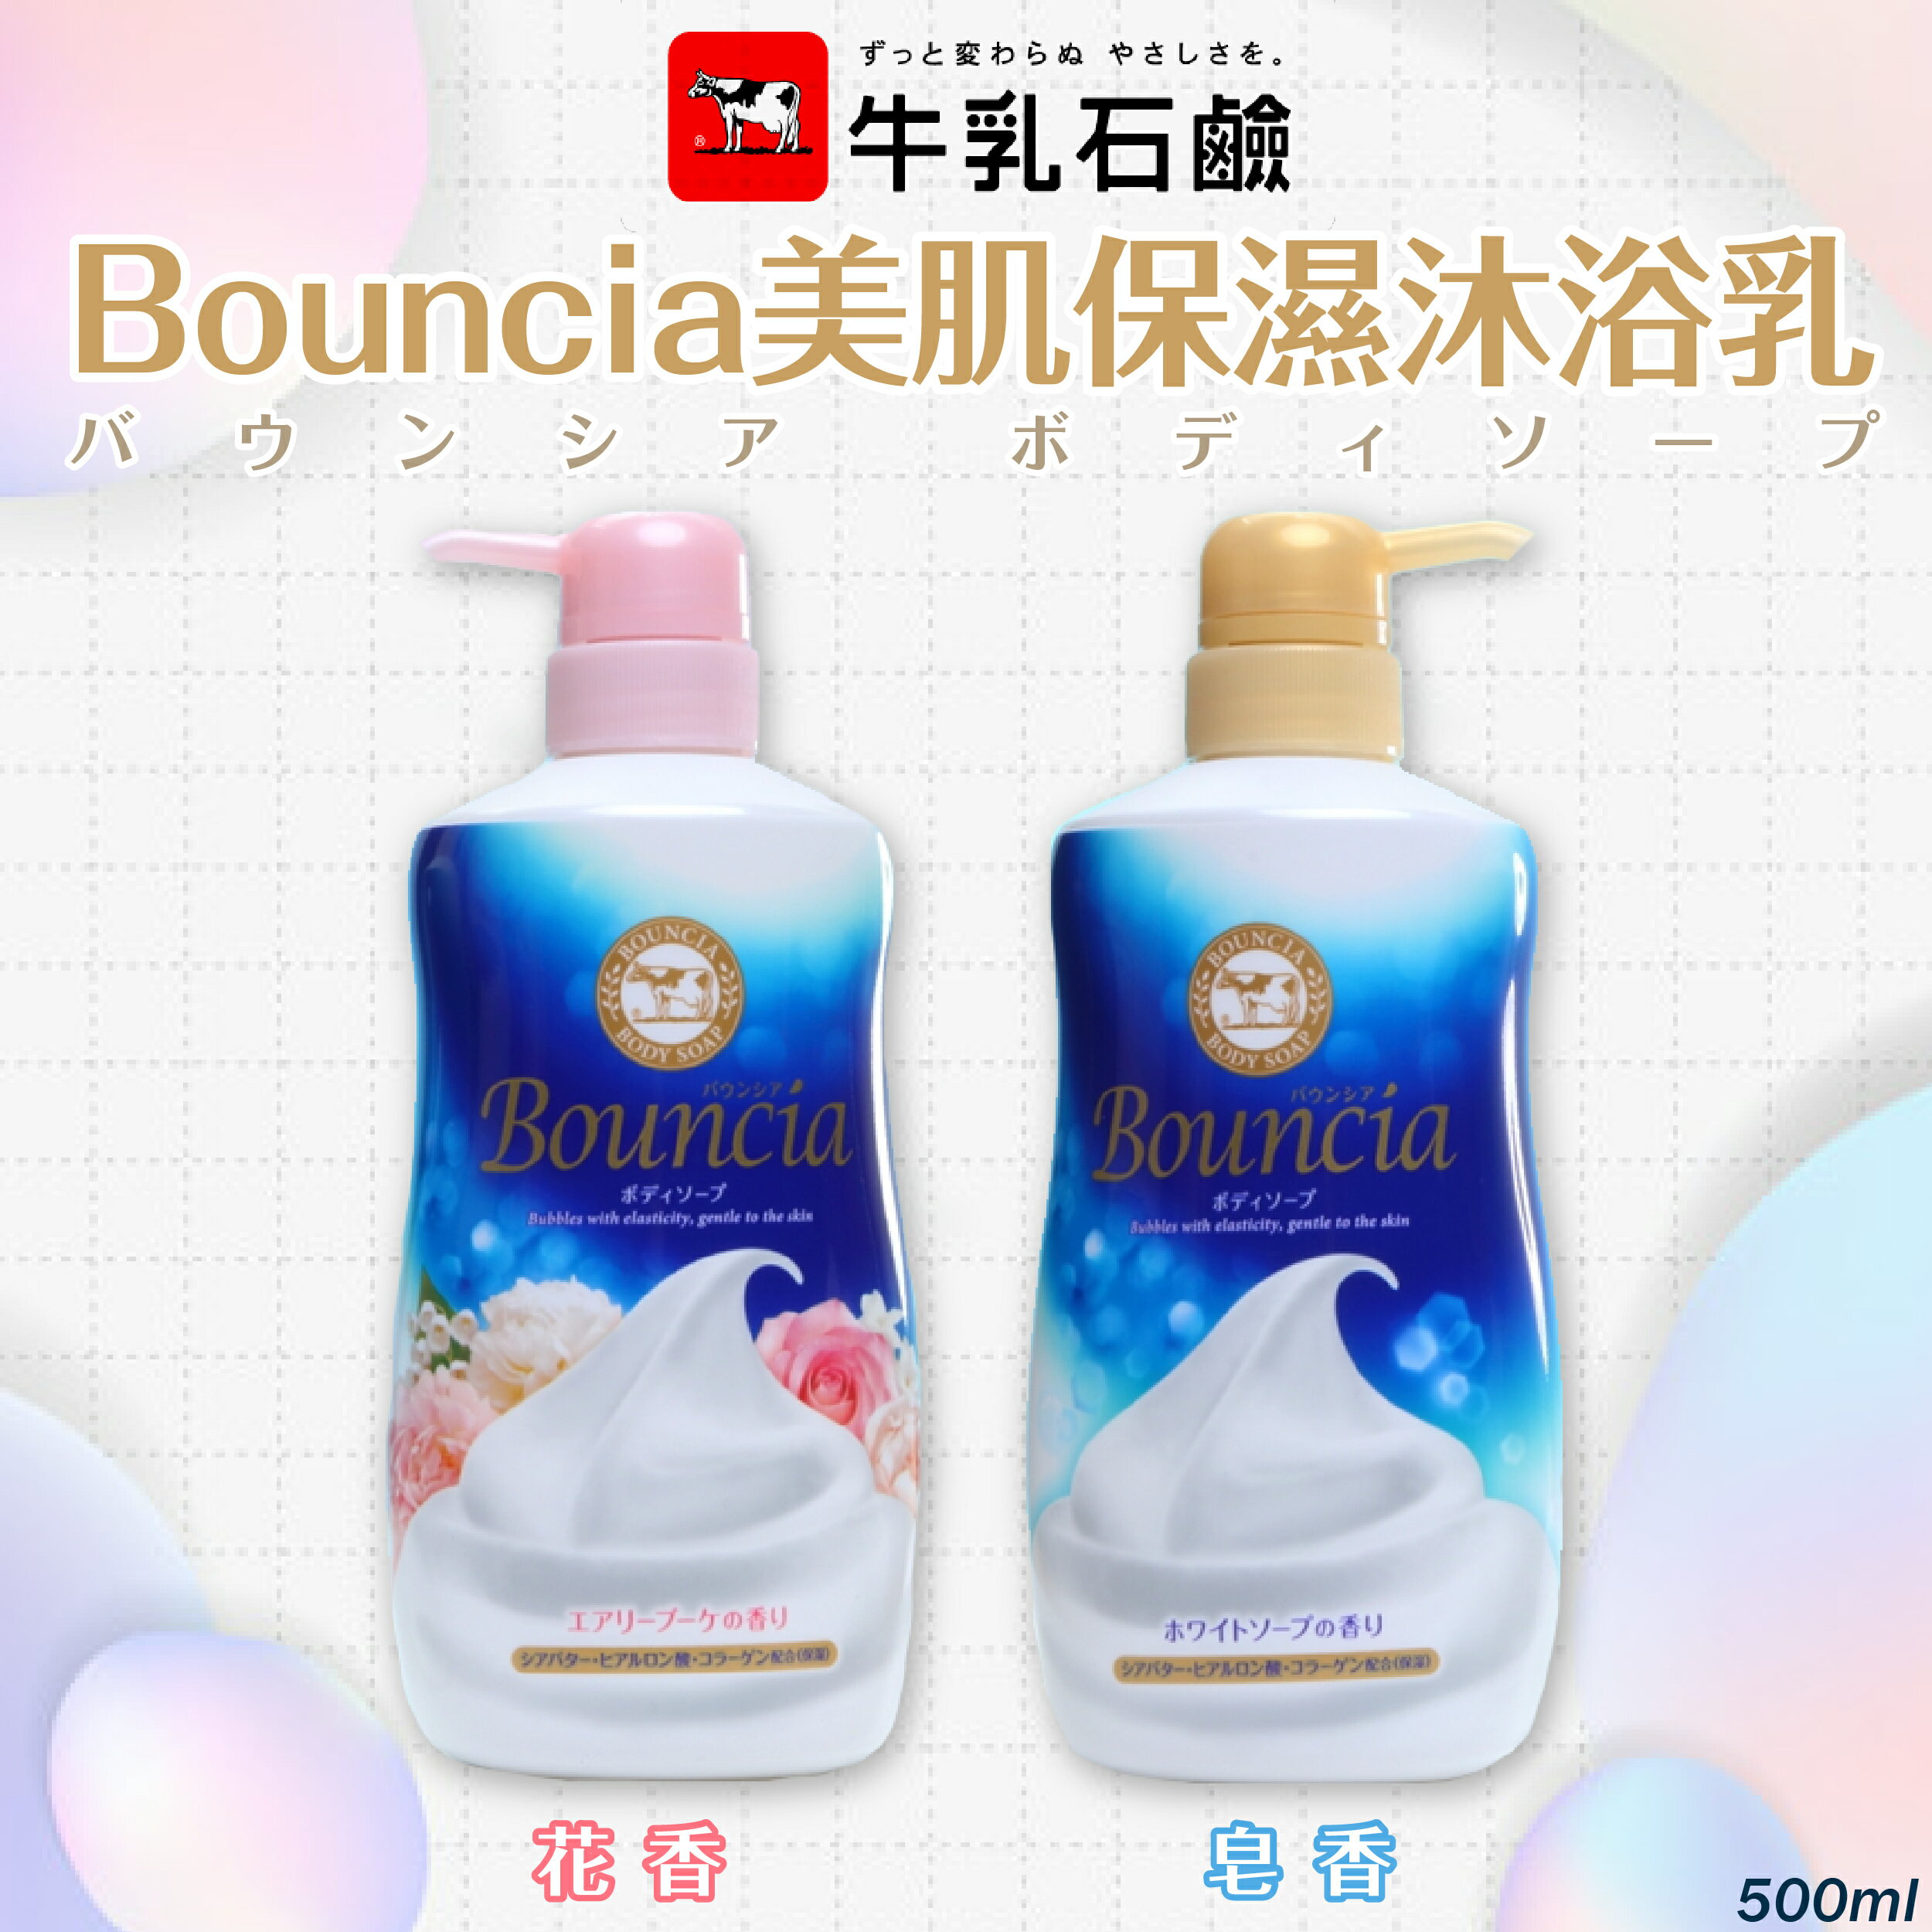 日本製【Cow牛乳石鹼】Bounica美肌保濕沐浴乳 500ml